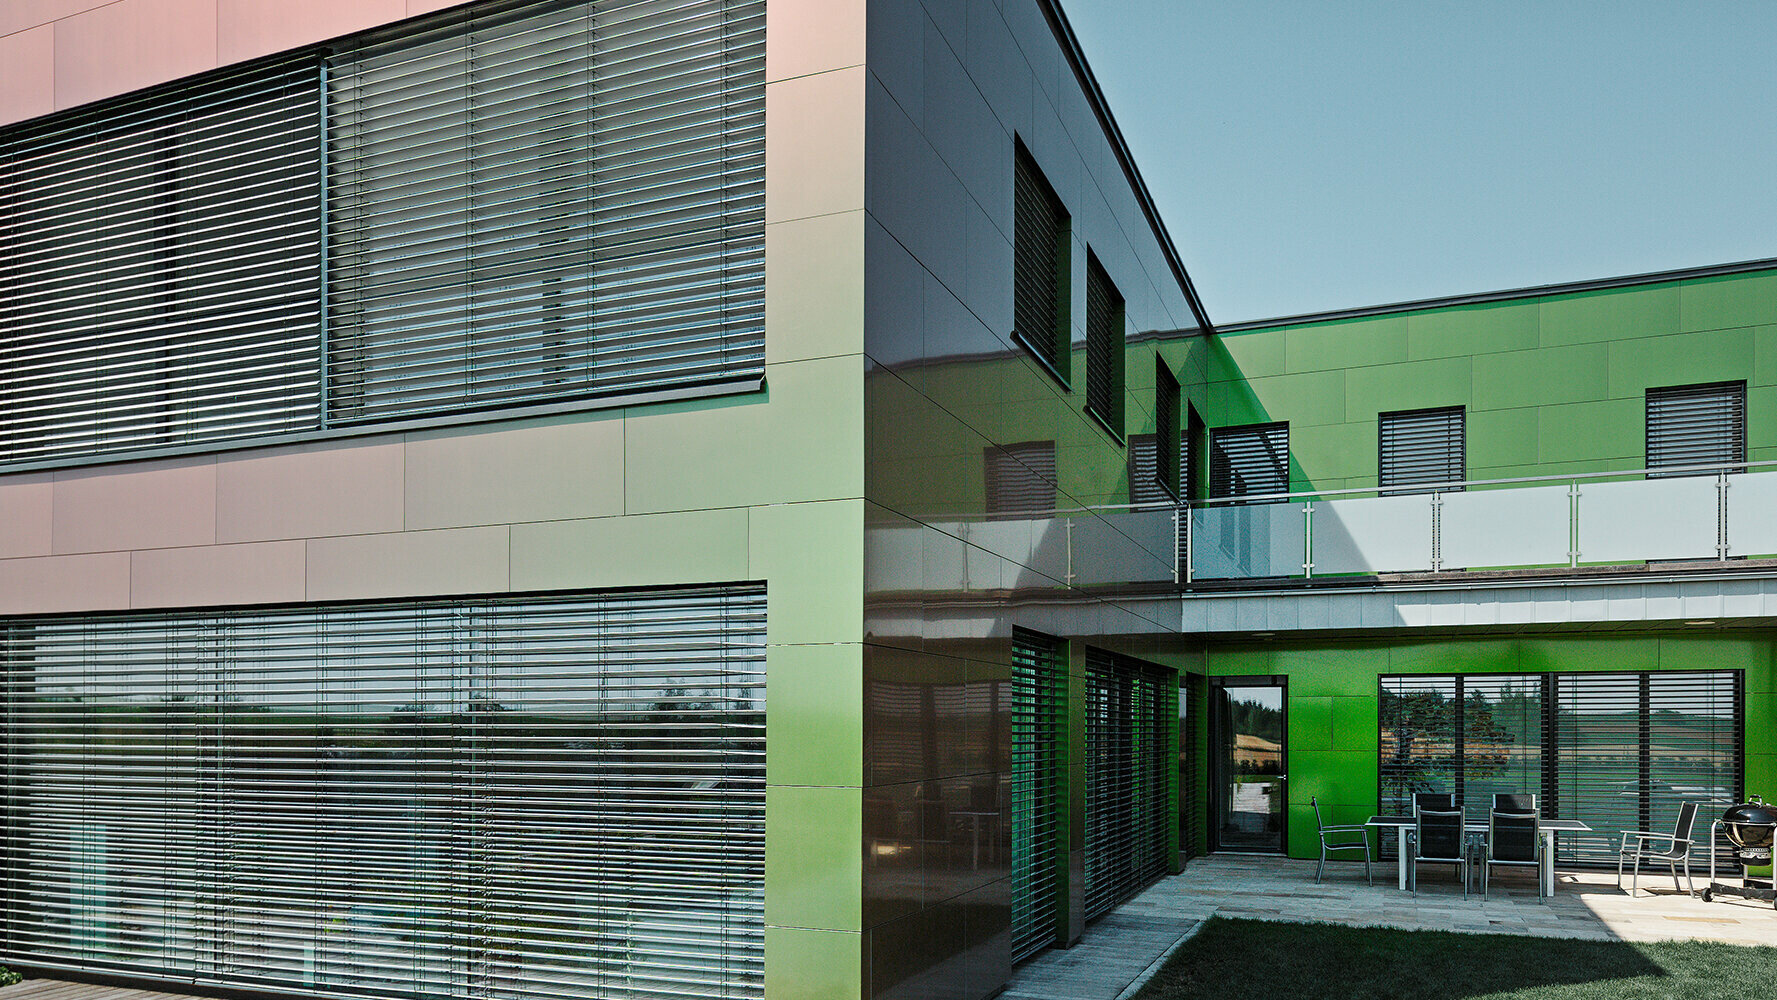 Fasada te stanovanjske hiše iz kompozitnih plošč je glede na svetlobo in perspektivo videti rjava, zelena ali temno vijolična.